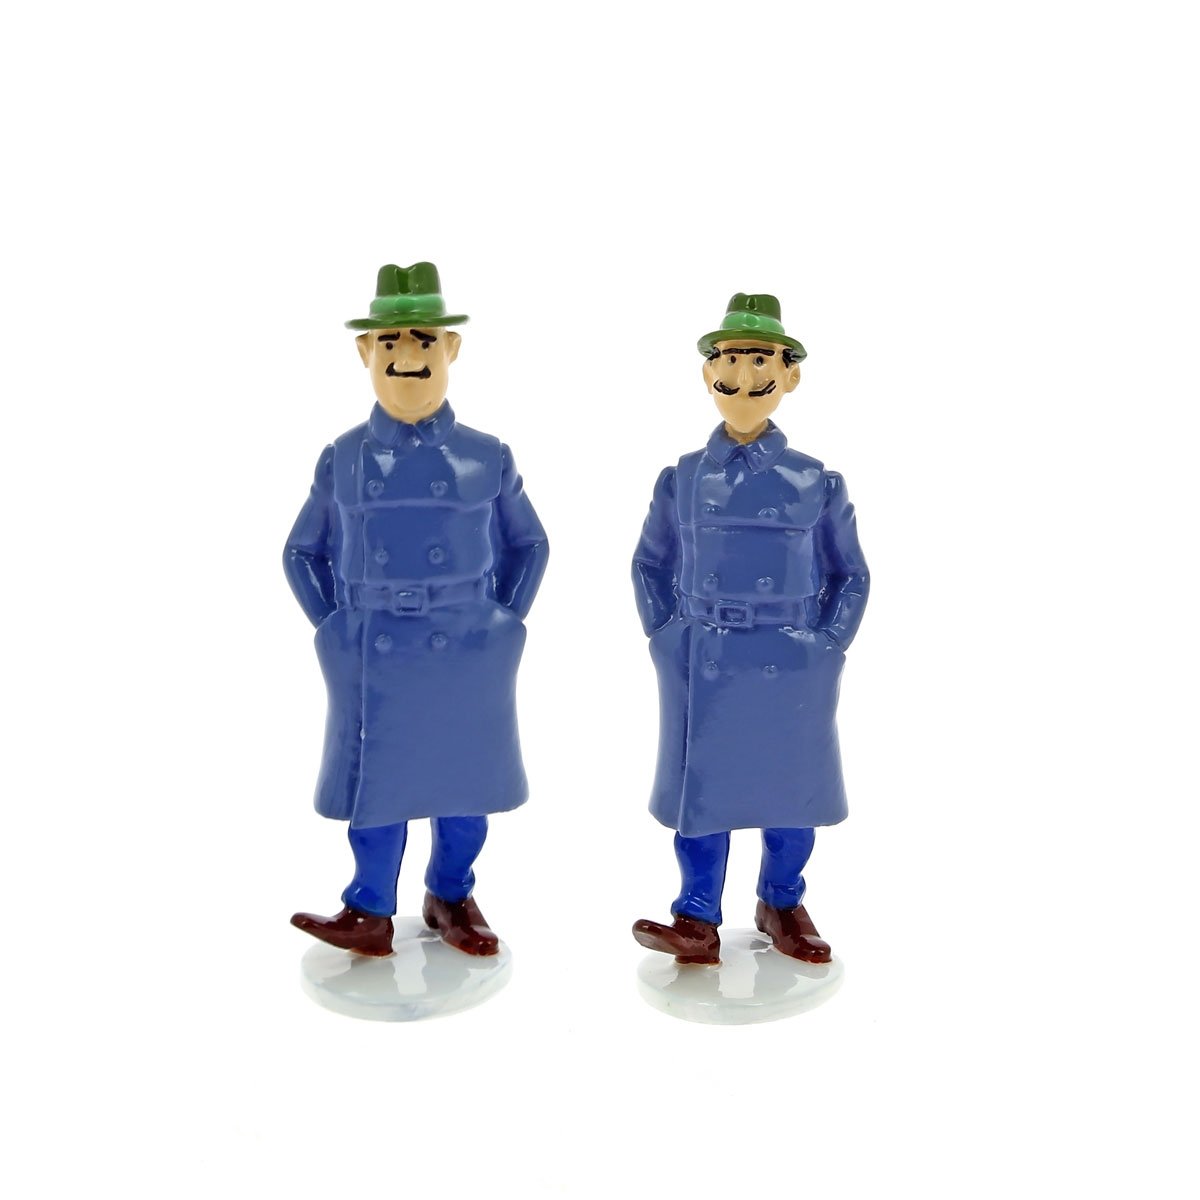 Kronick & Klumsi lead figurines